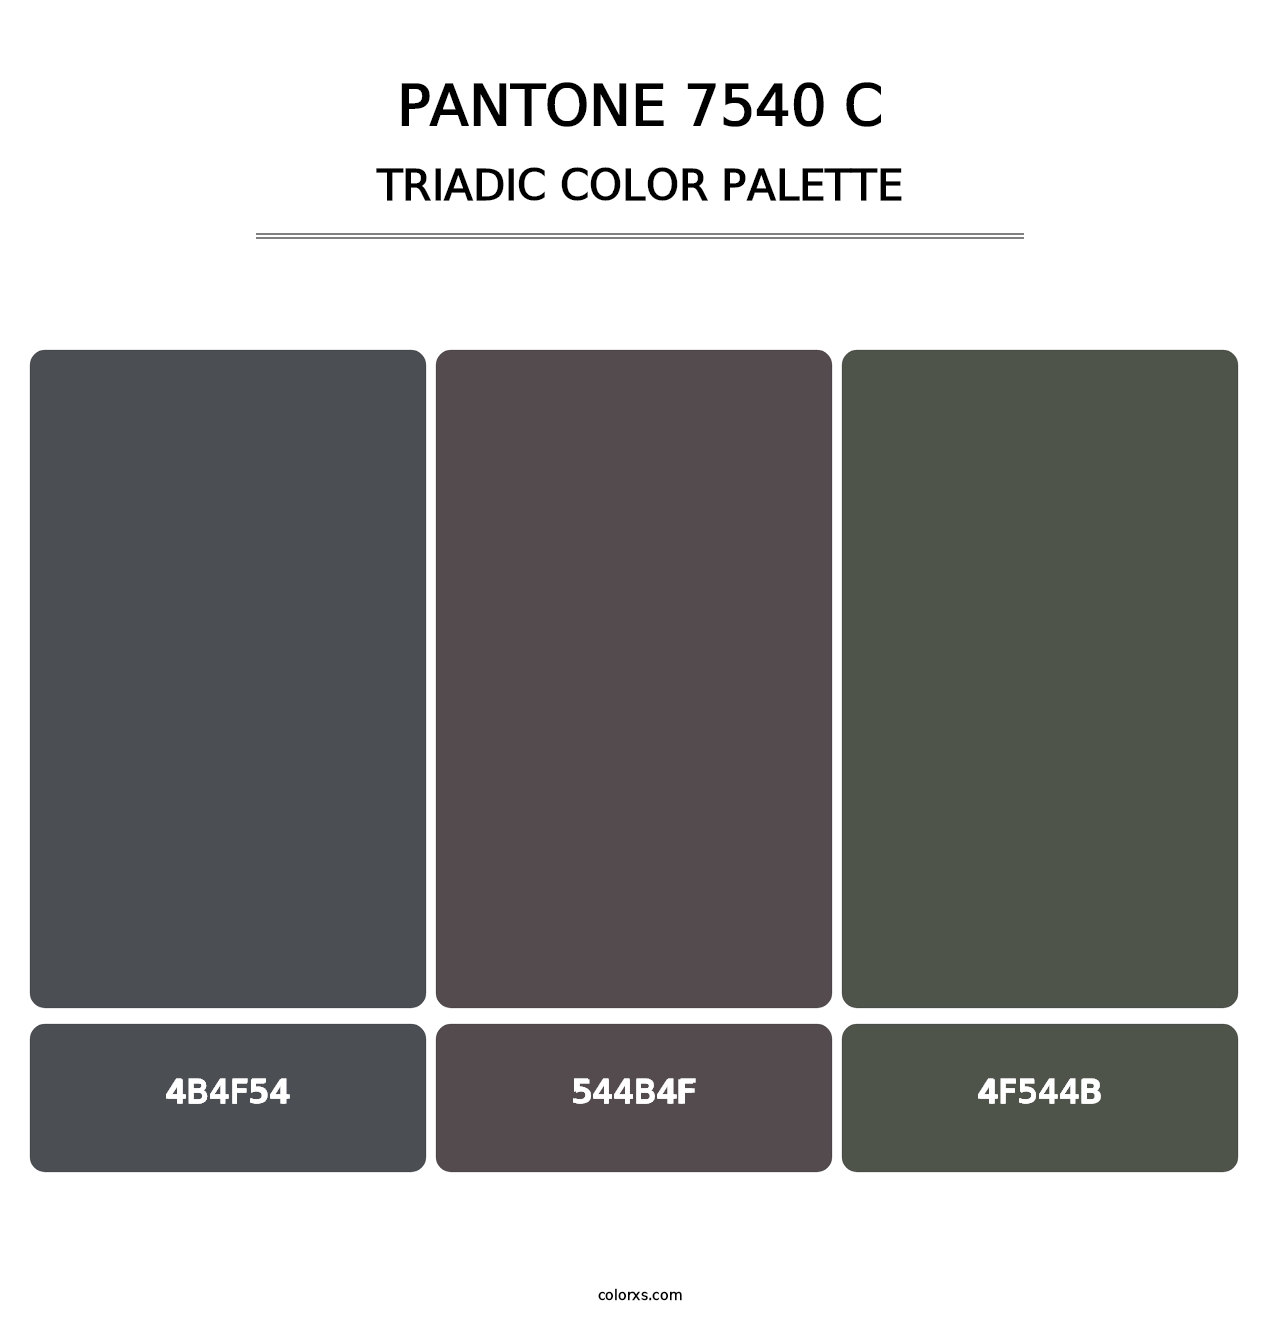 PANTONE 7540 C - Triadic Color Palette